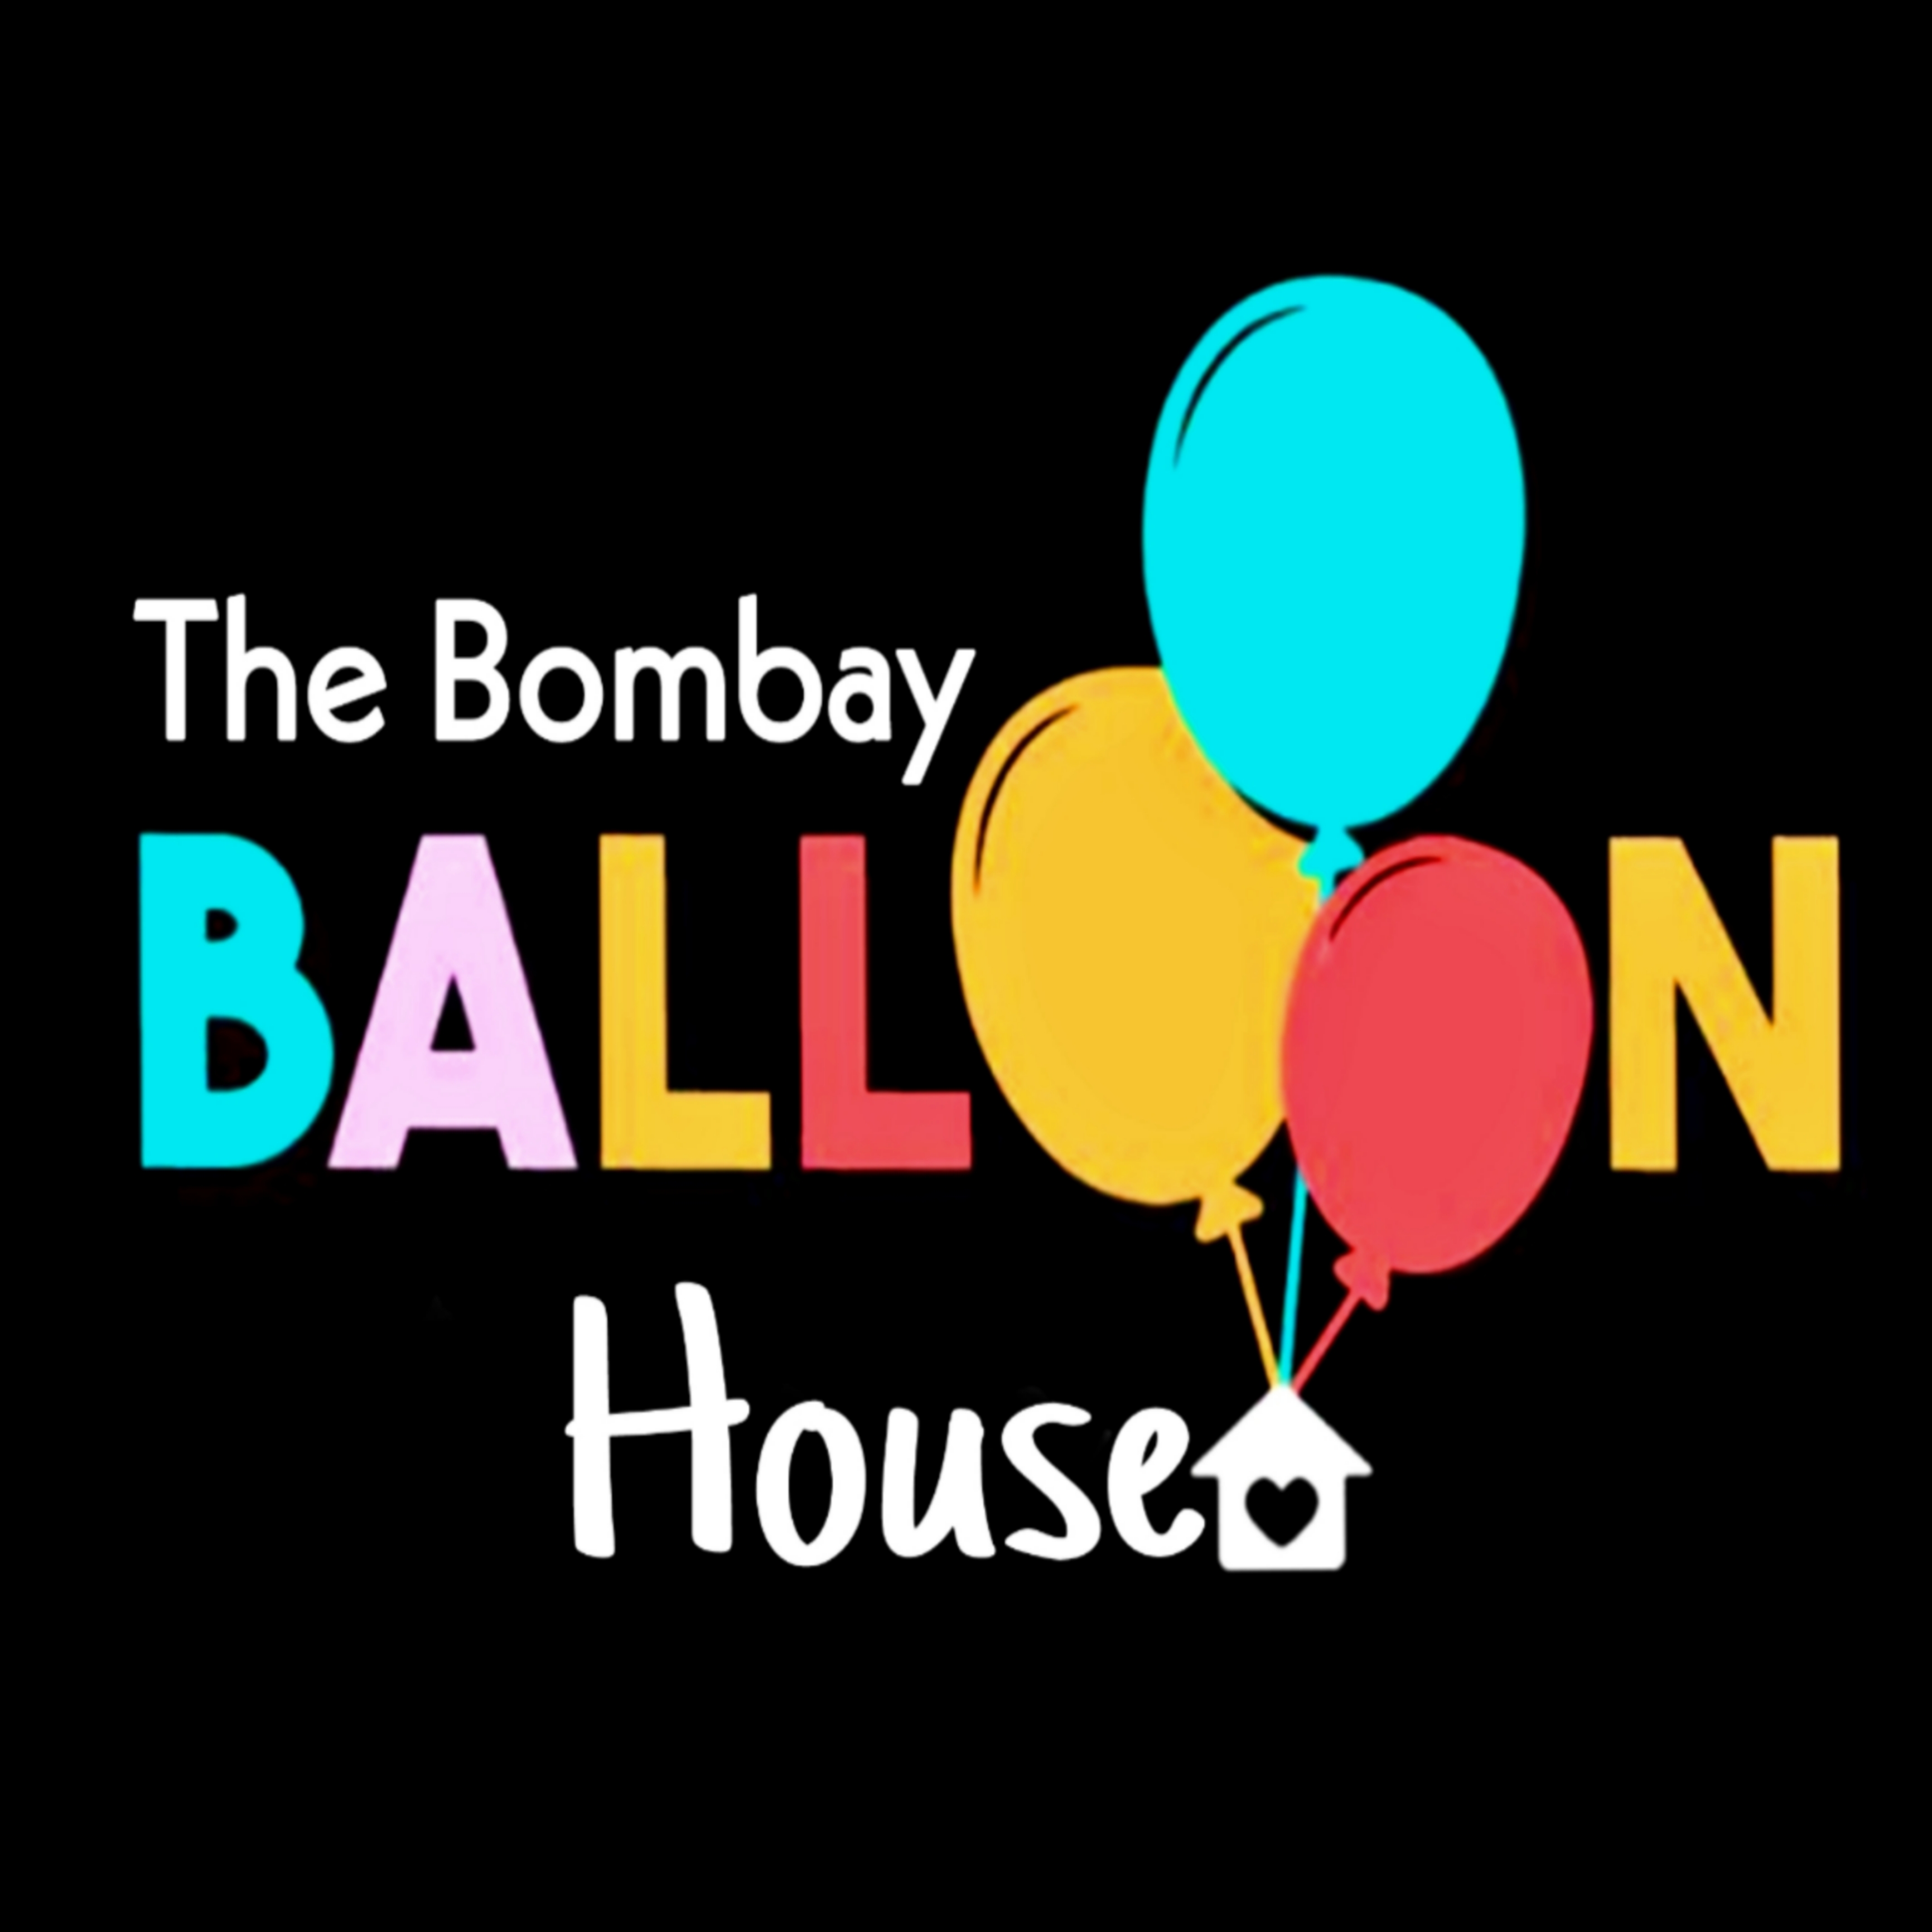 The Bombay Balloons House logo